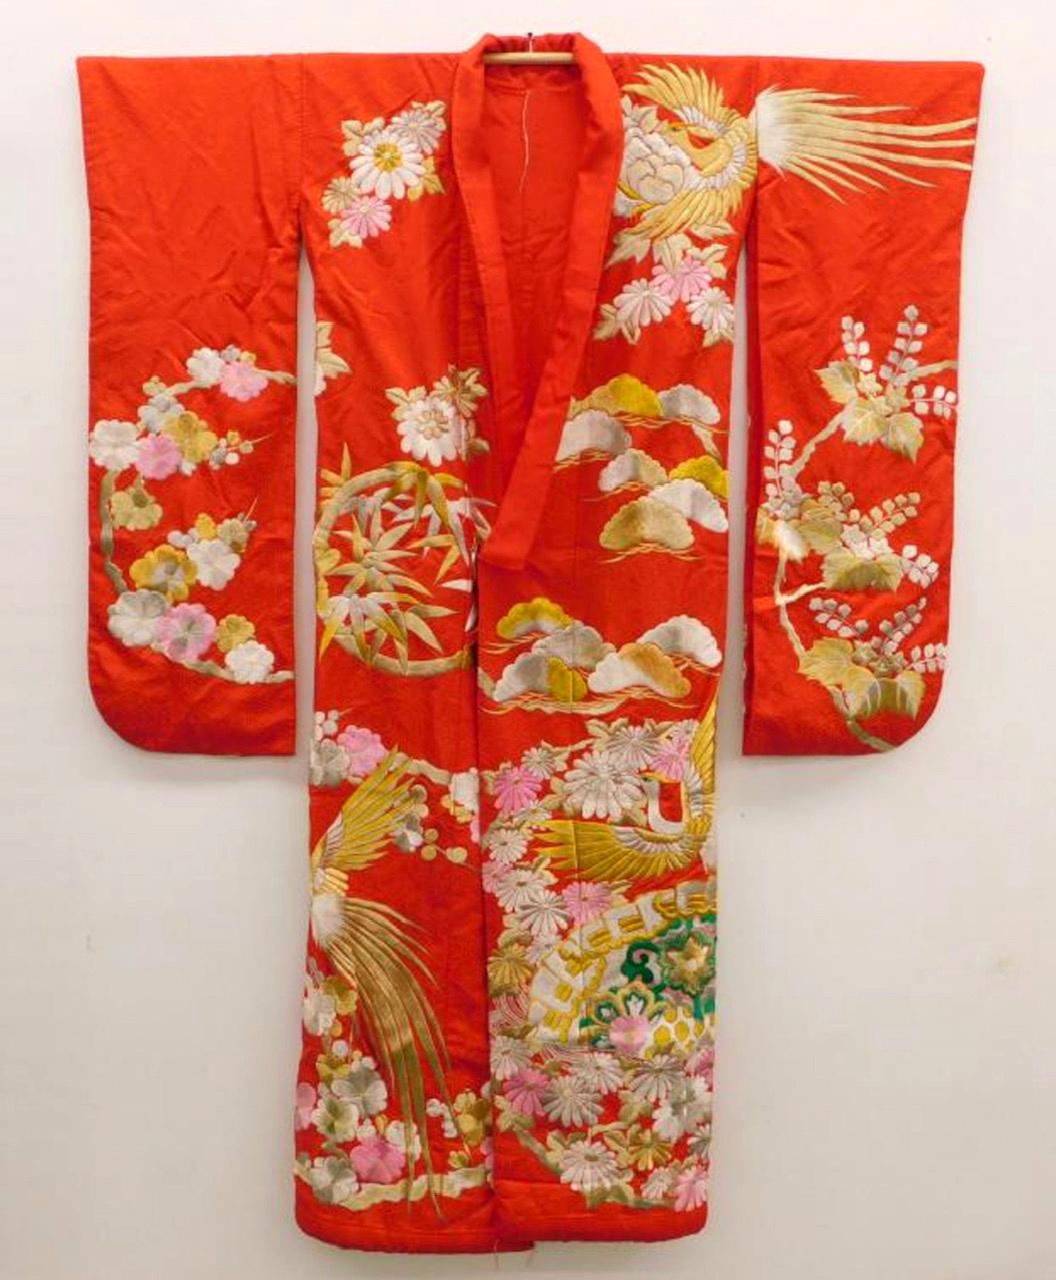 Kimono de mariage/ruban de cérémonie Uchikake ancien, d'une beauté saisissante, datant de la fin de la période Meiji à la période Taisho, dans les années 1910-1930. Ce vêtement de mariée est d'un rouge vif et comporte des broderies élaborées et